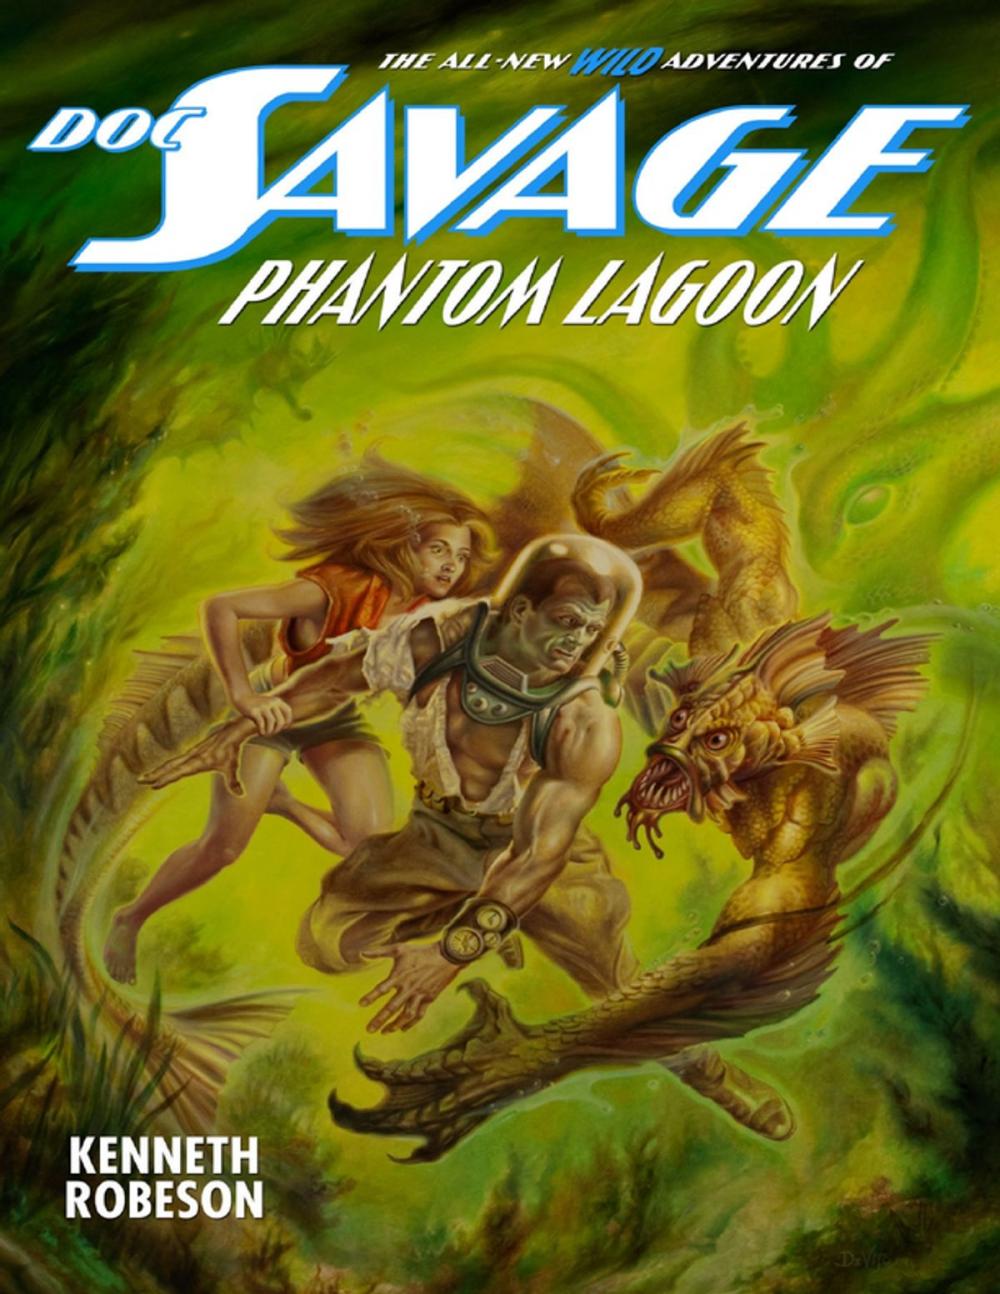 Big bigCover of Doc Savage: Phantom Lagoon